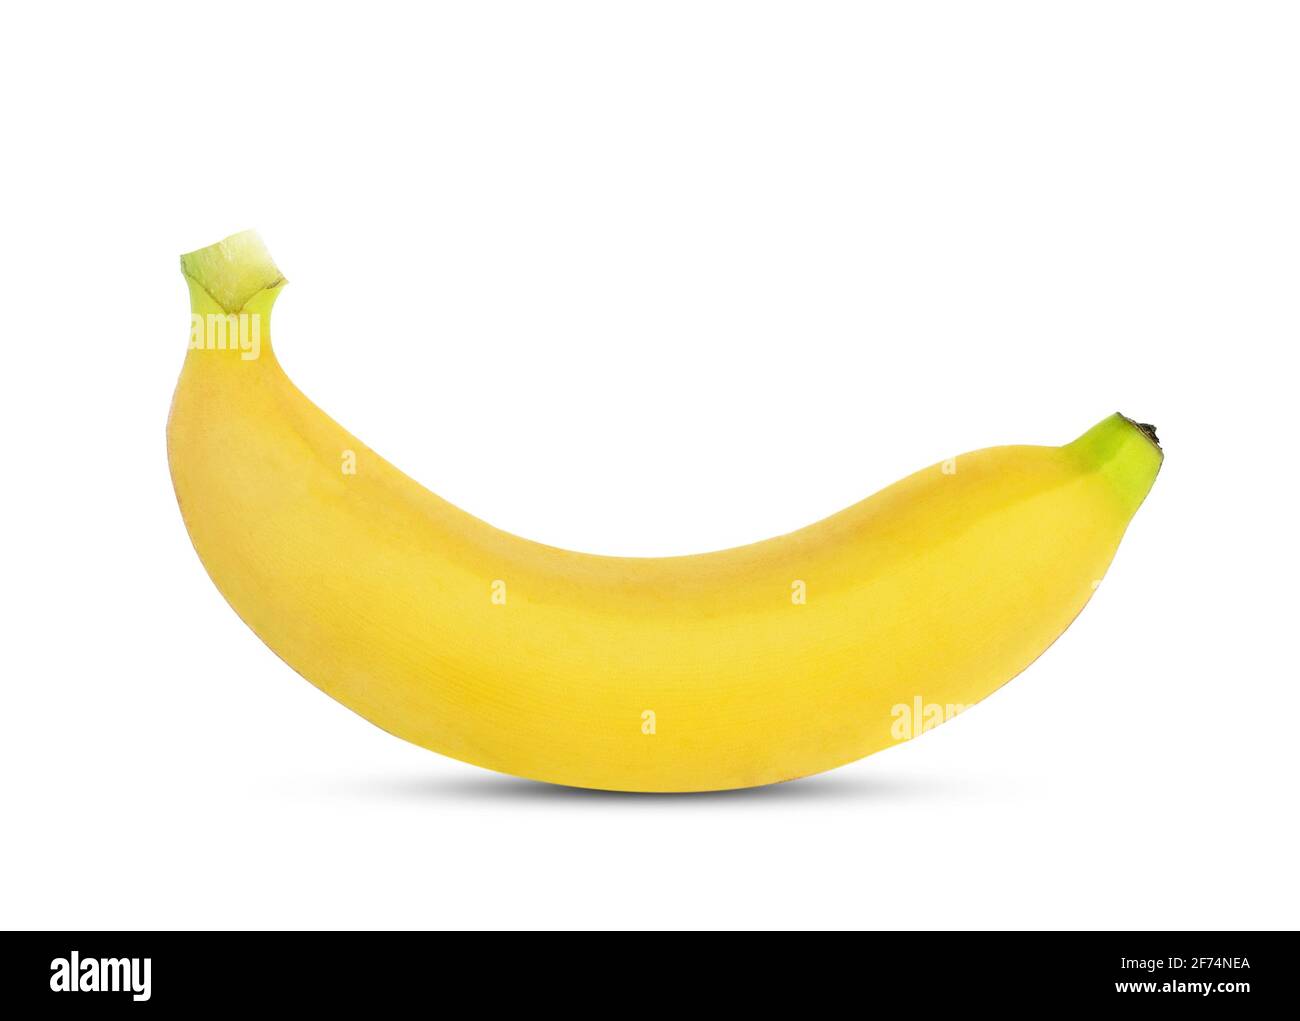 banana isolated on white background. Stock Photo